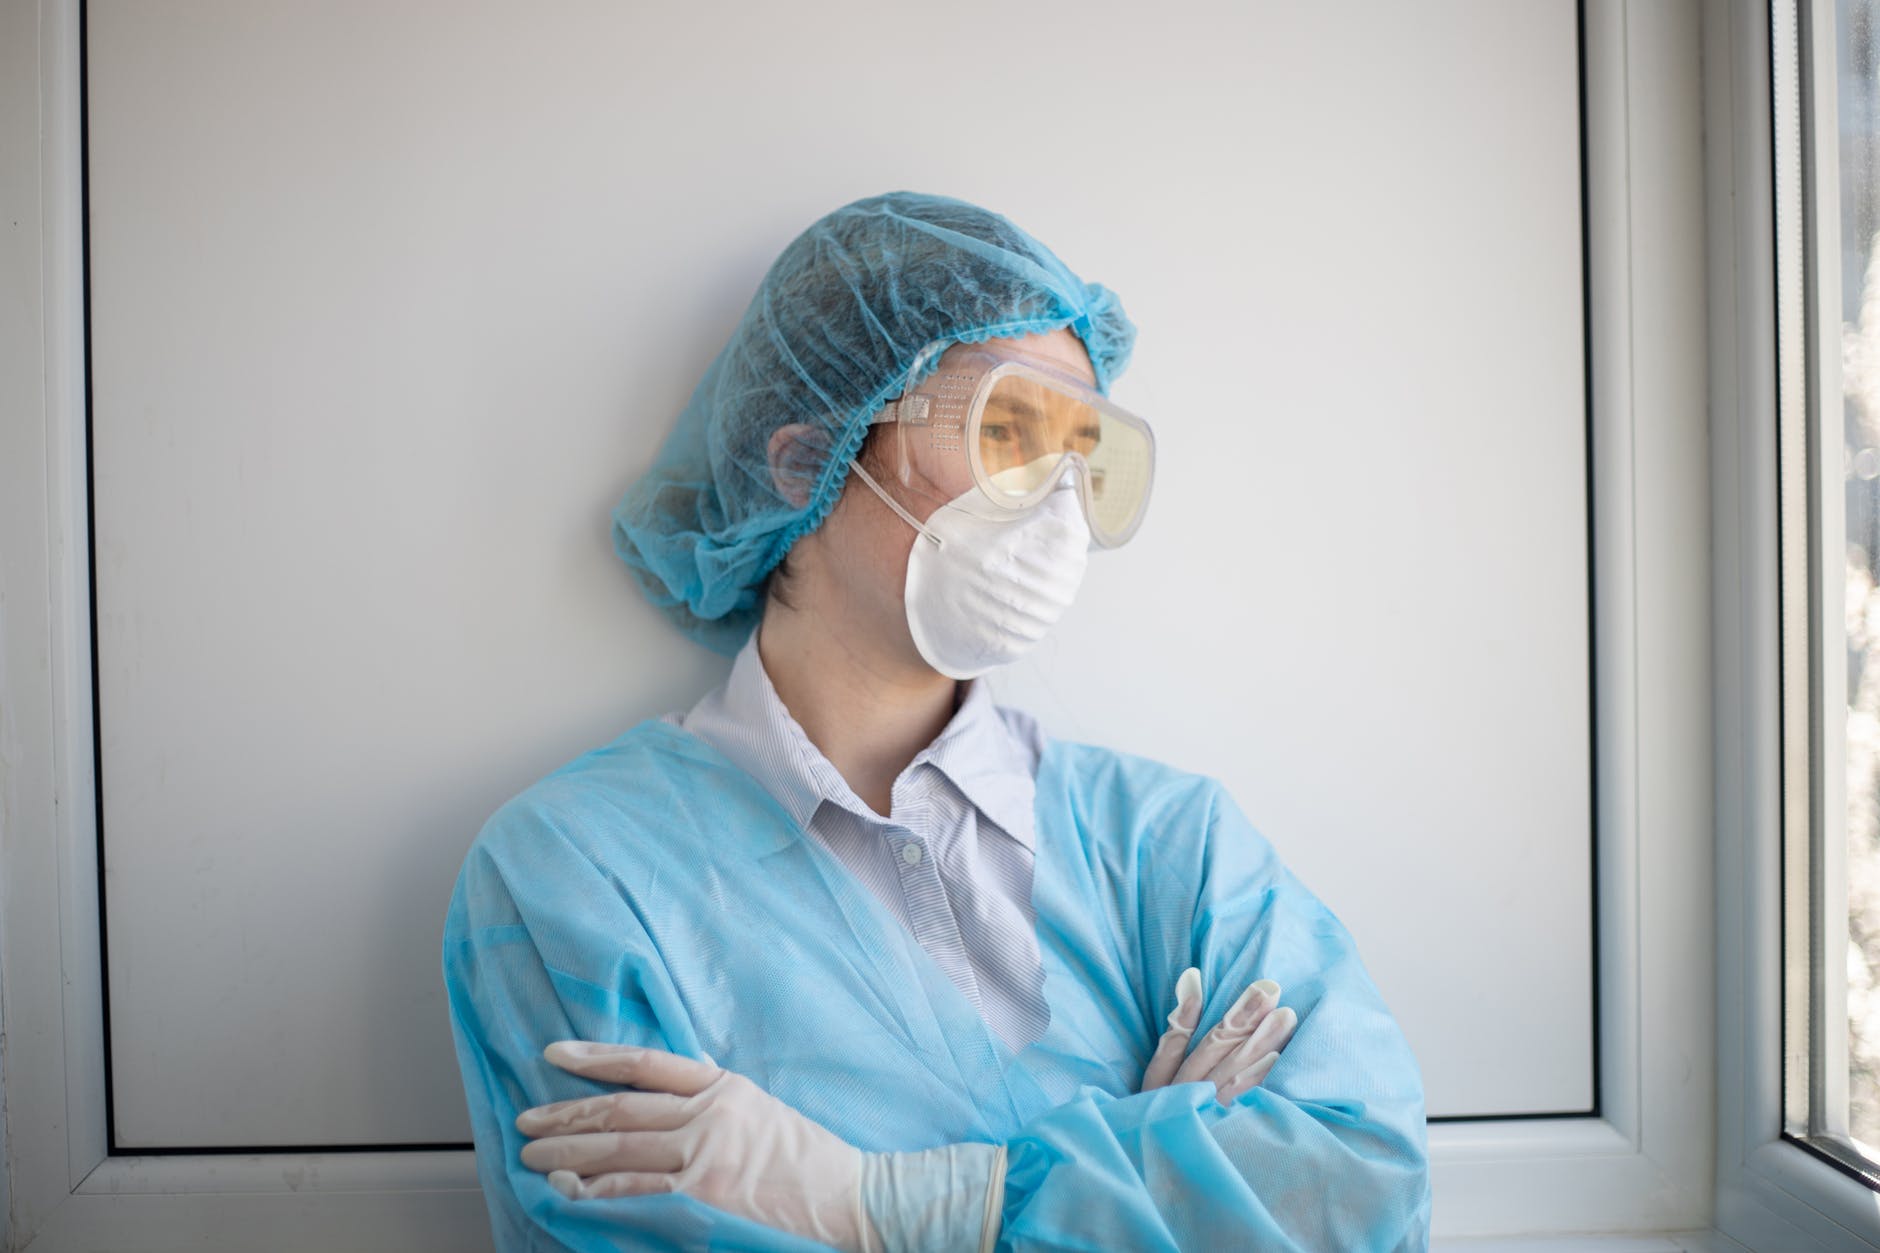 Trabajadora de la salud con su uniforme de trabajo. | Foto: Pexels